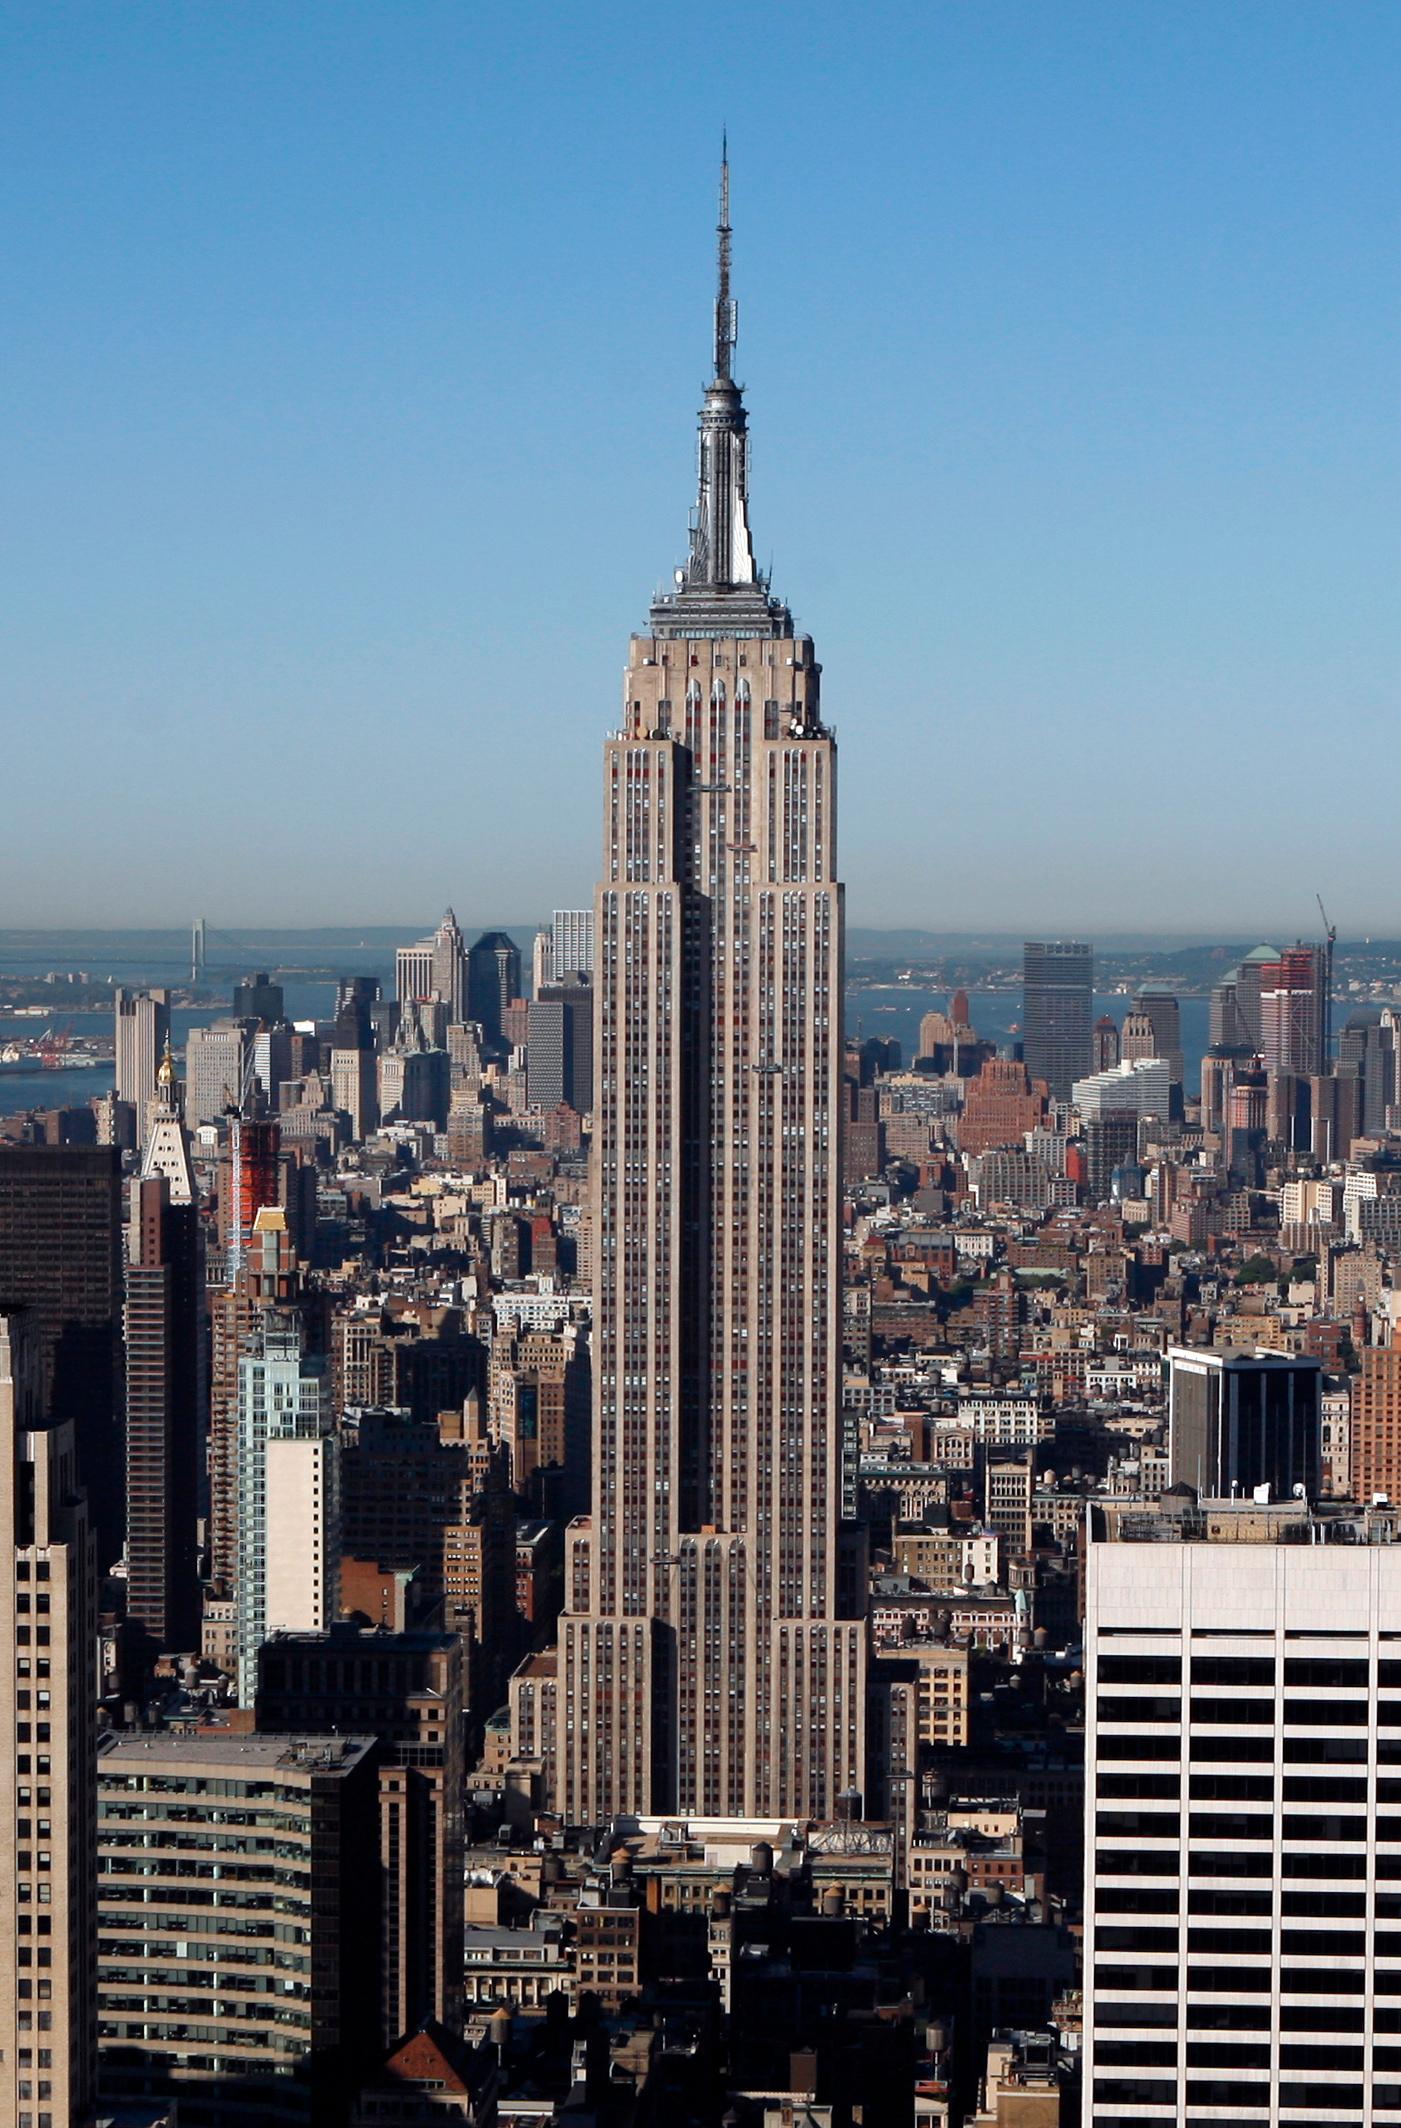 1. EMPIRE STATE BUILDING, NEW YORK En riktig New York-ikon. Innehar rekordet i att kunna titulera sig "världens högsta byggnad" längst, från 1931 fram till 1972. Höjd: 443 meter. Klar: 1931. Byggkostnad: 287 miljoner kronor.
Kolla efter billiga resor till New York här!